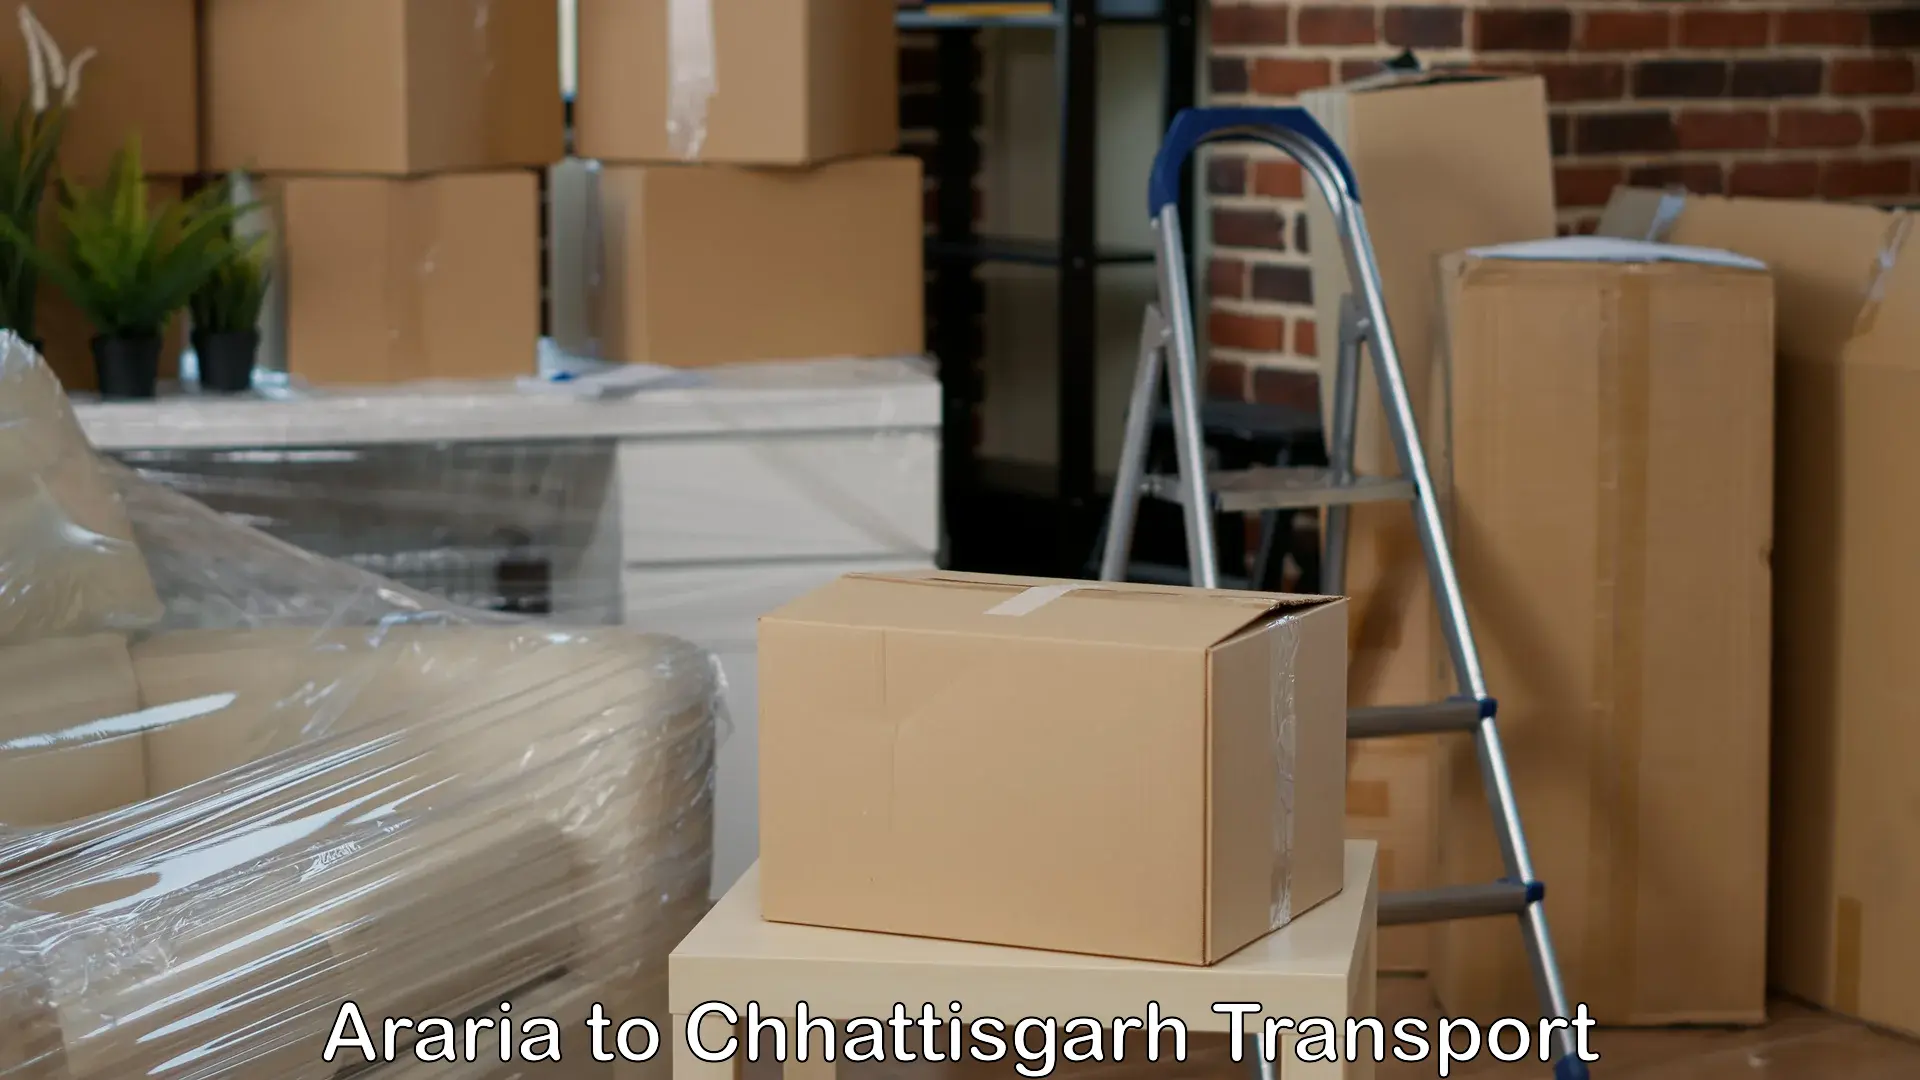 Container transportation services Araria to Chhattisgarh